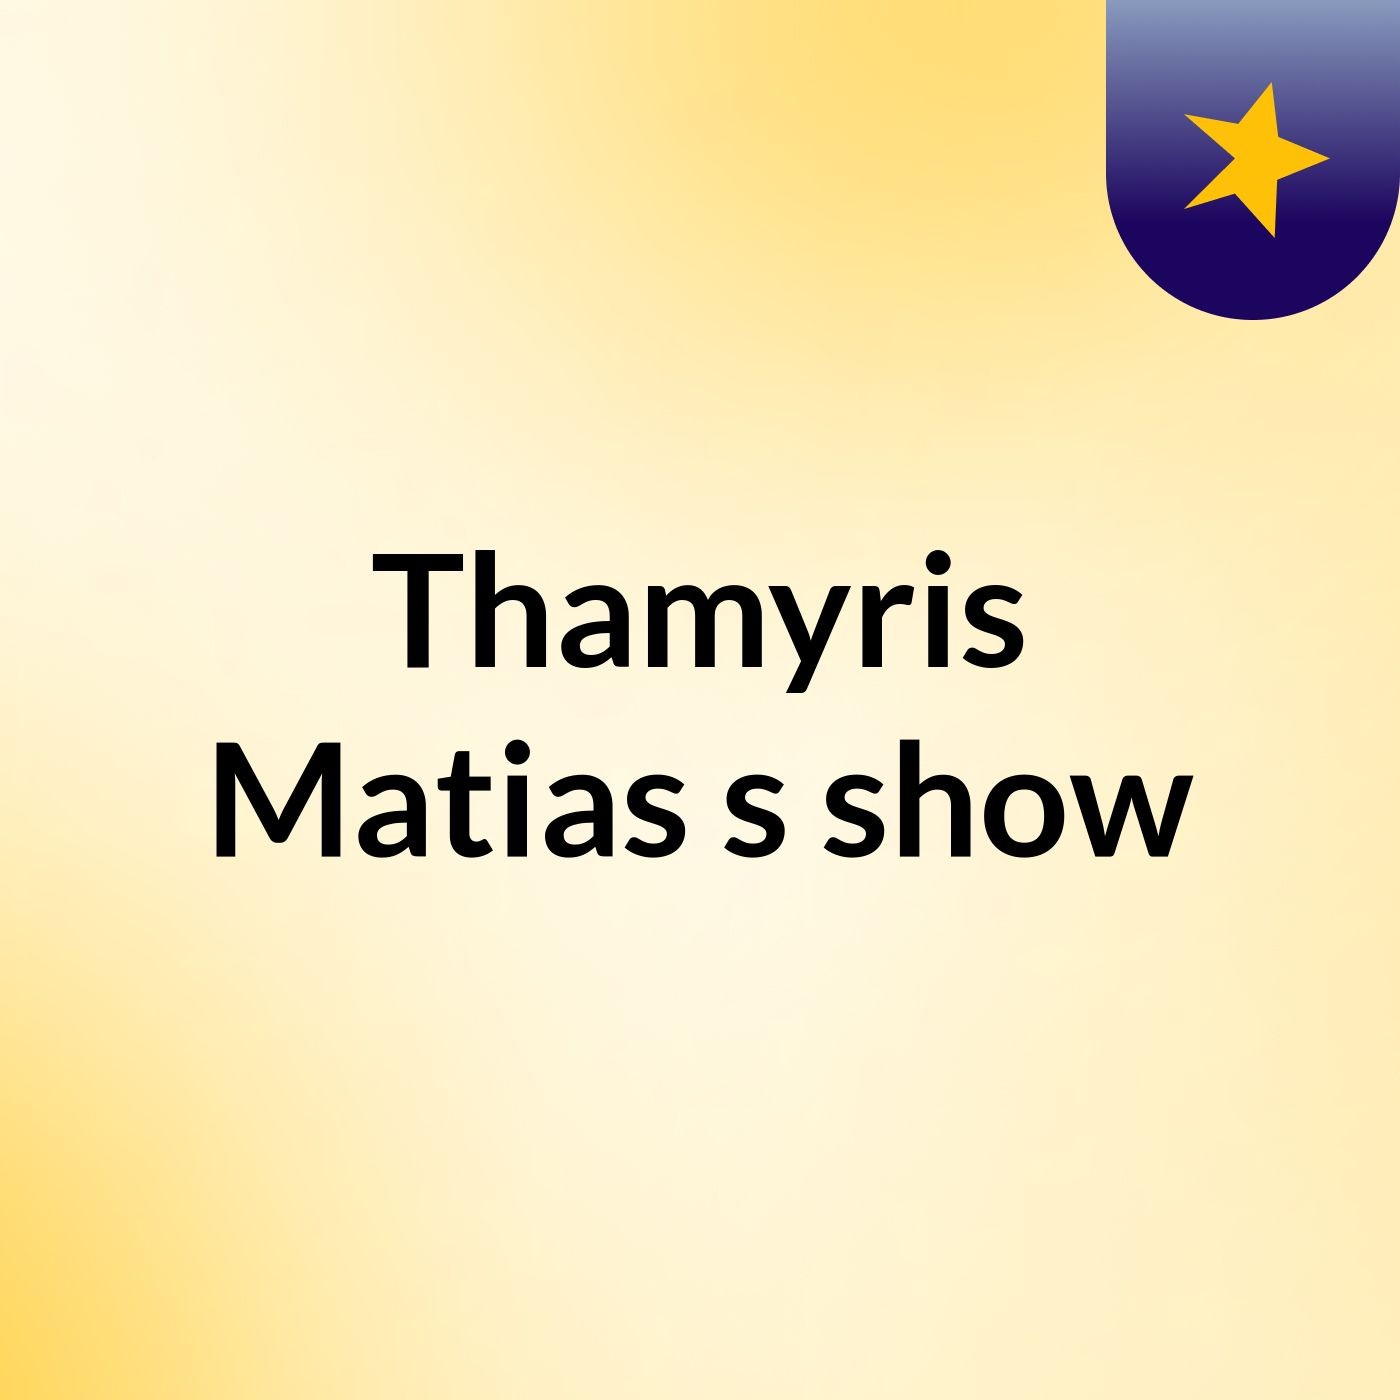 Thamyris Matias's show